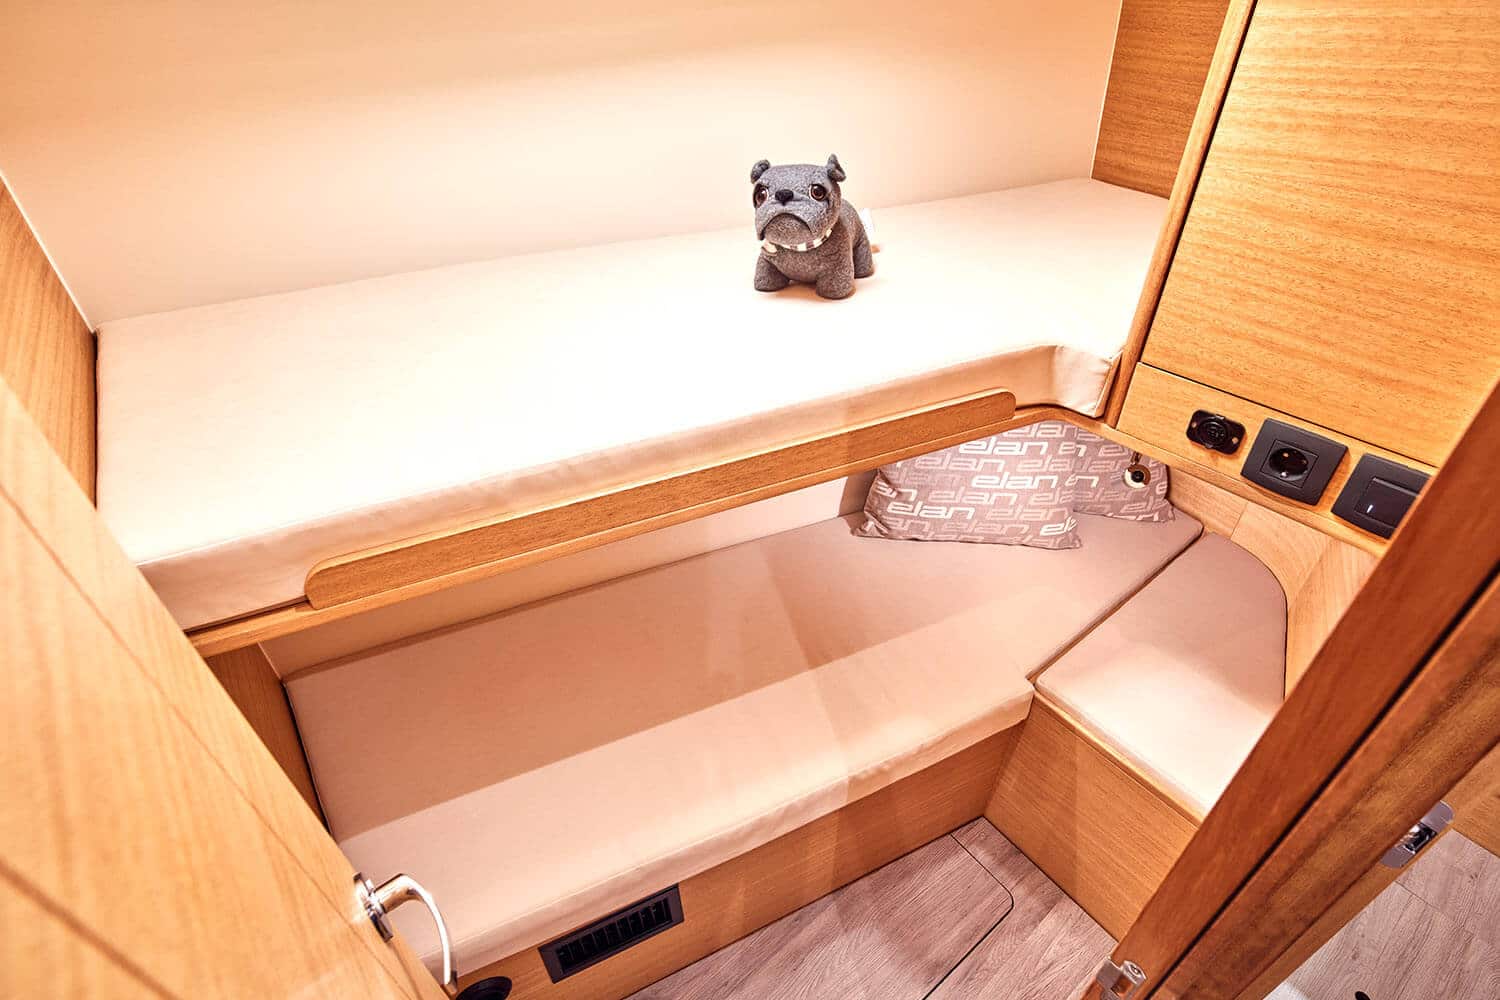 Ein ausgestopftes Bulldoggenspielzeug liegt auf der oberen Koje in einer kompakten, holzgetäfelten Kabine an Bord einer Segelyacht, komplett mit heller Bettwäsche und eingebauten Regalen.